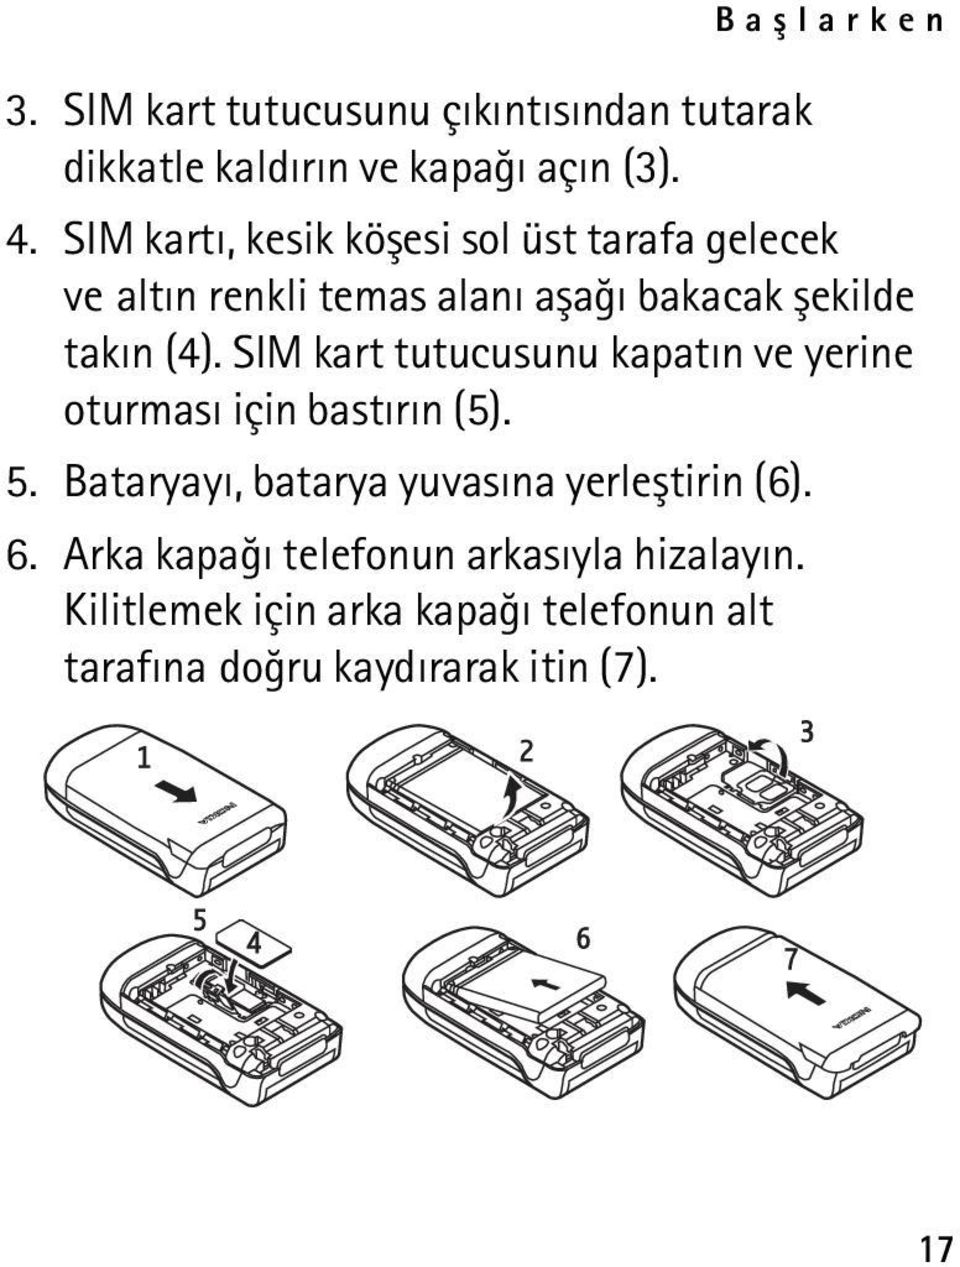 SIM kart tutucusunu kapatýn ve yerine oturmasý için bastýrýn (5). 5.